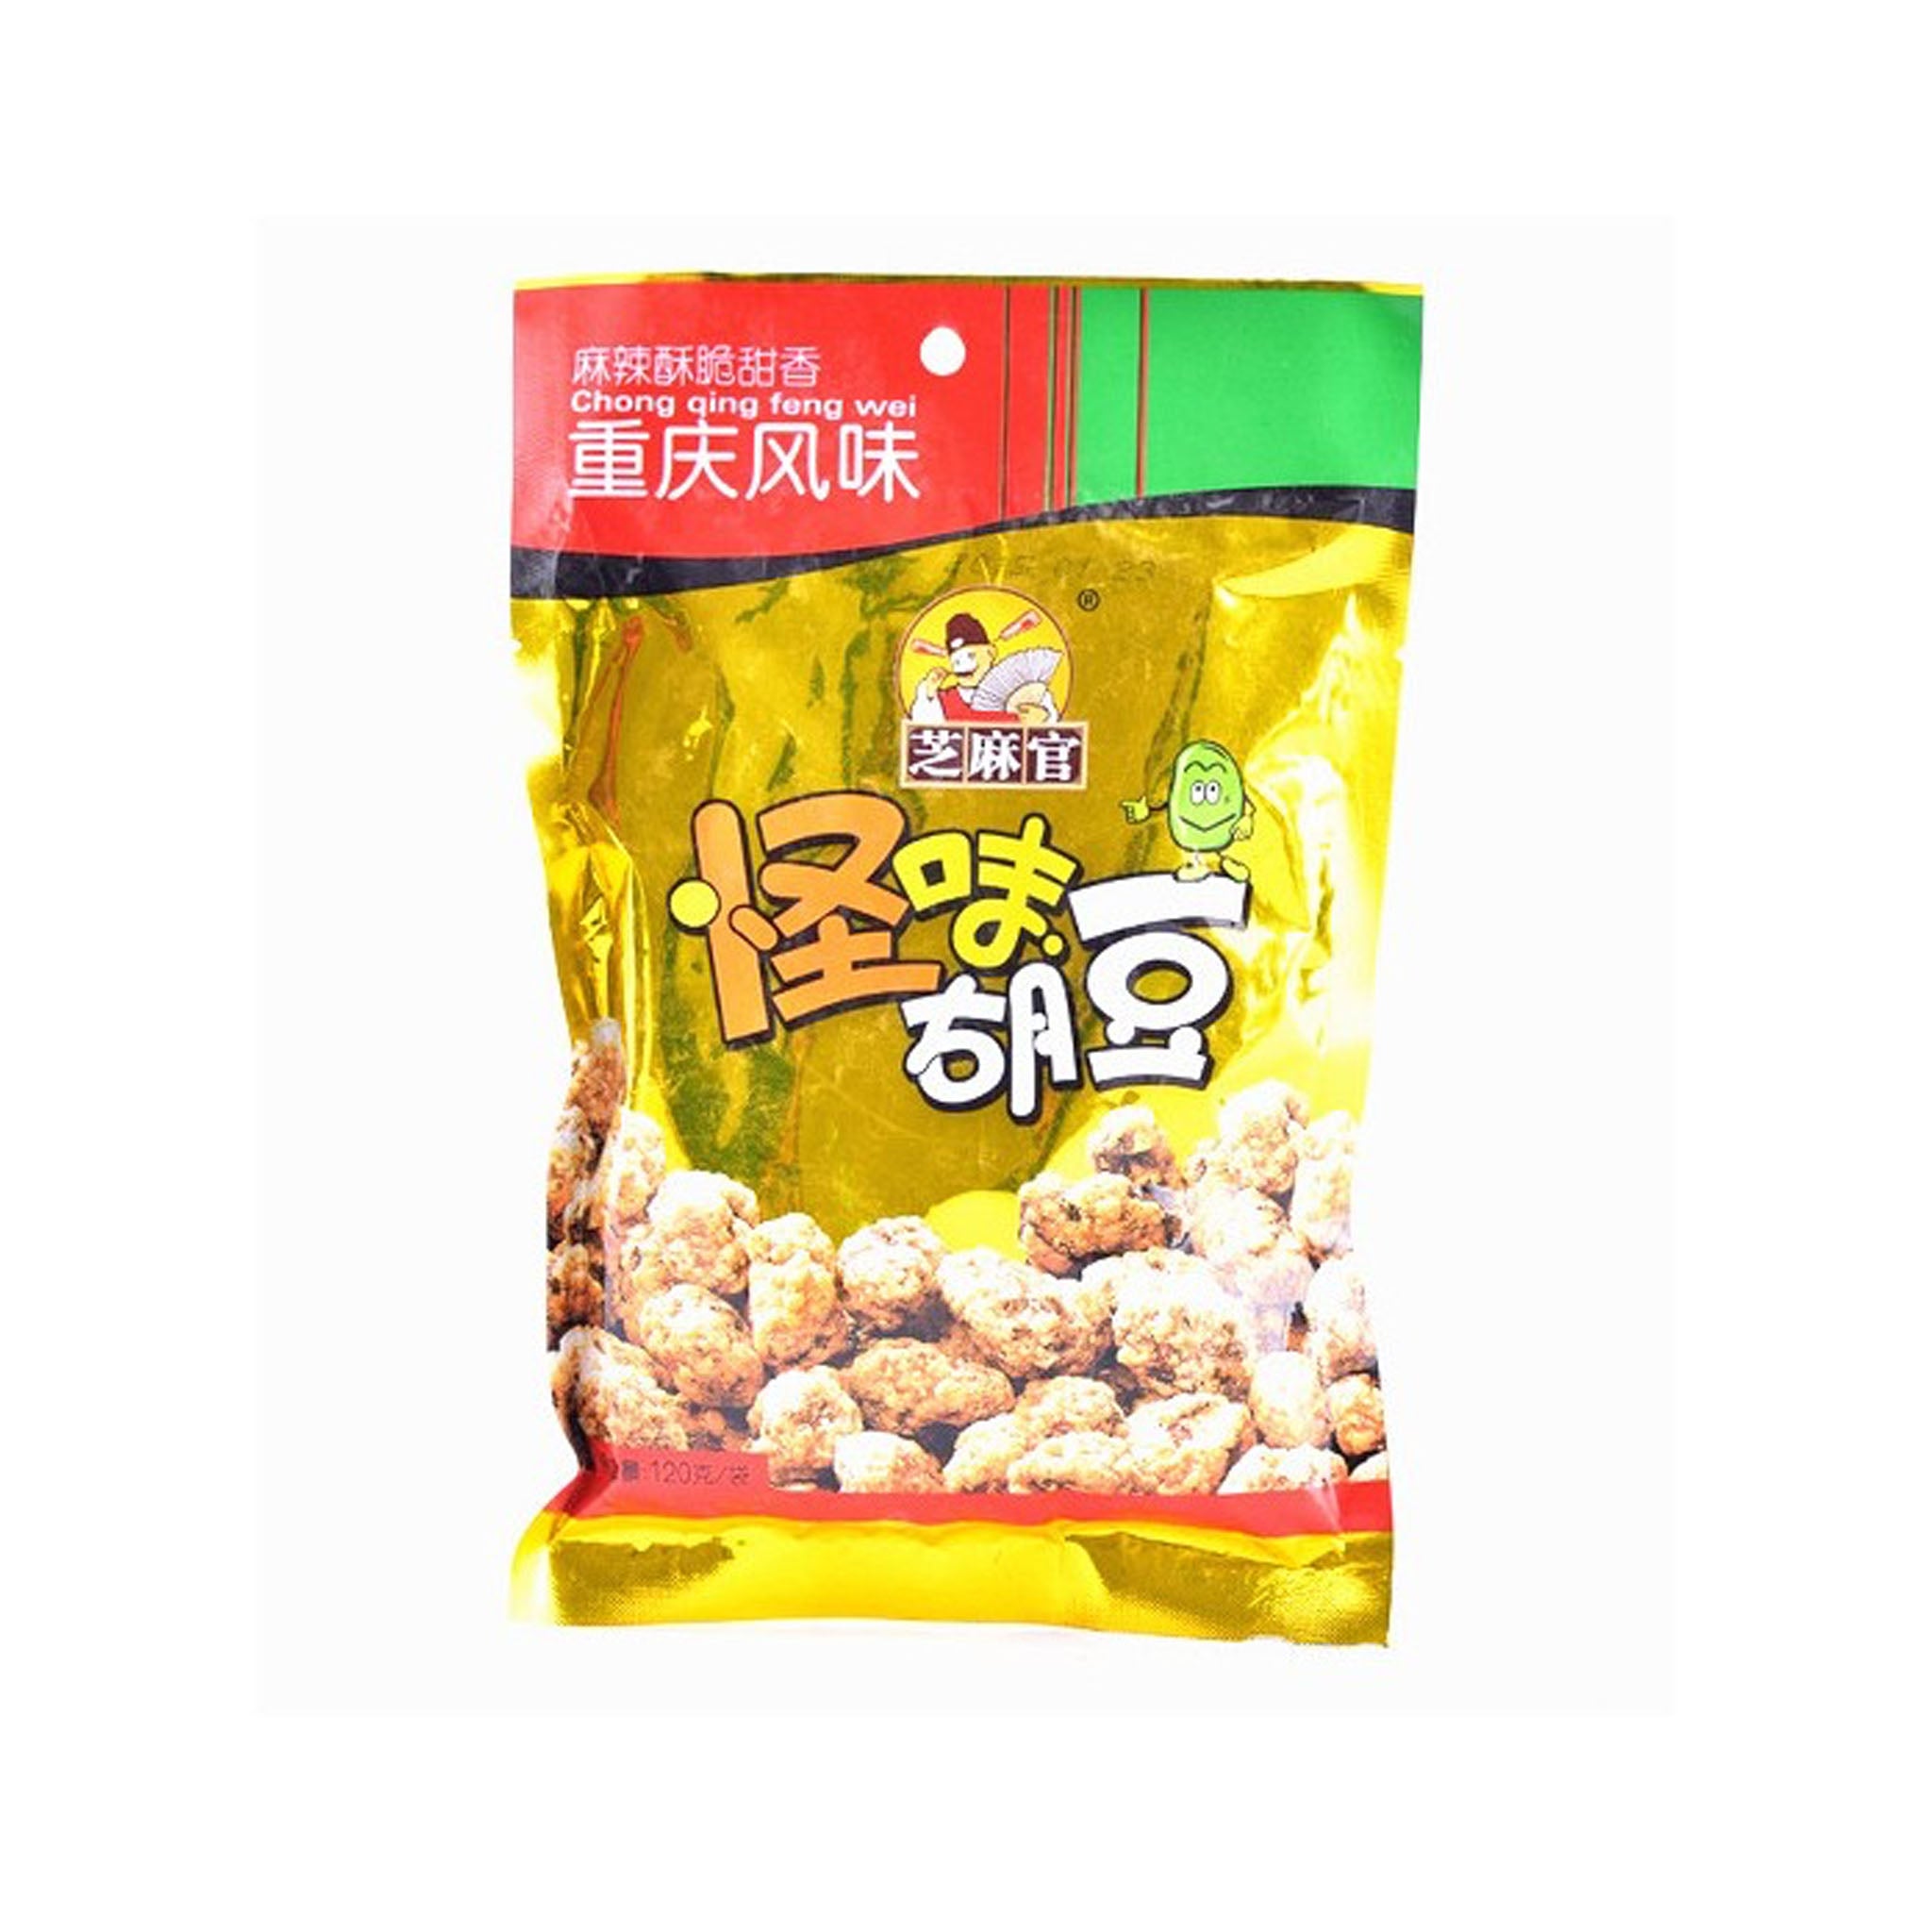 芝麻官 怪味胡豆 Special Flavor Broad Beans 120g